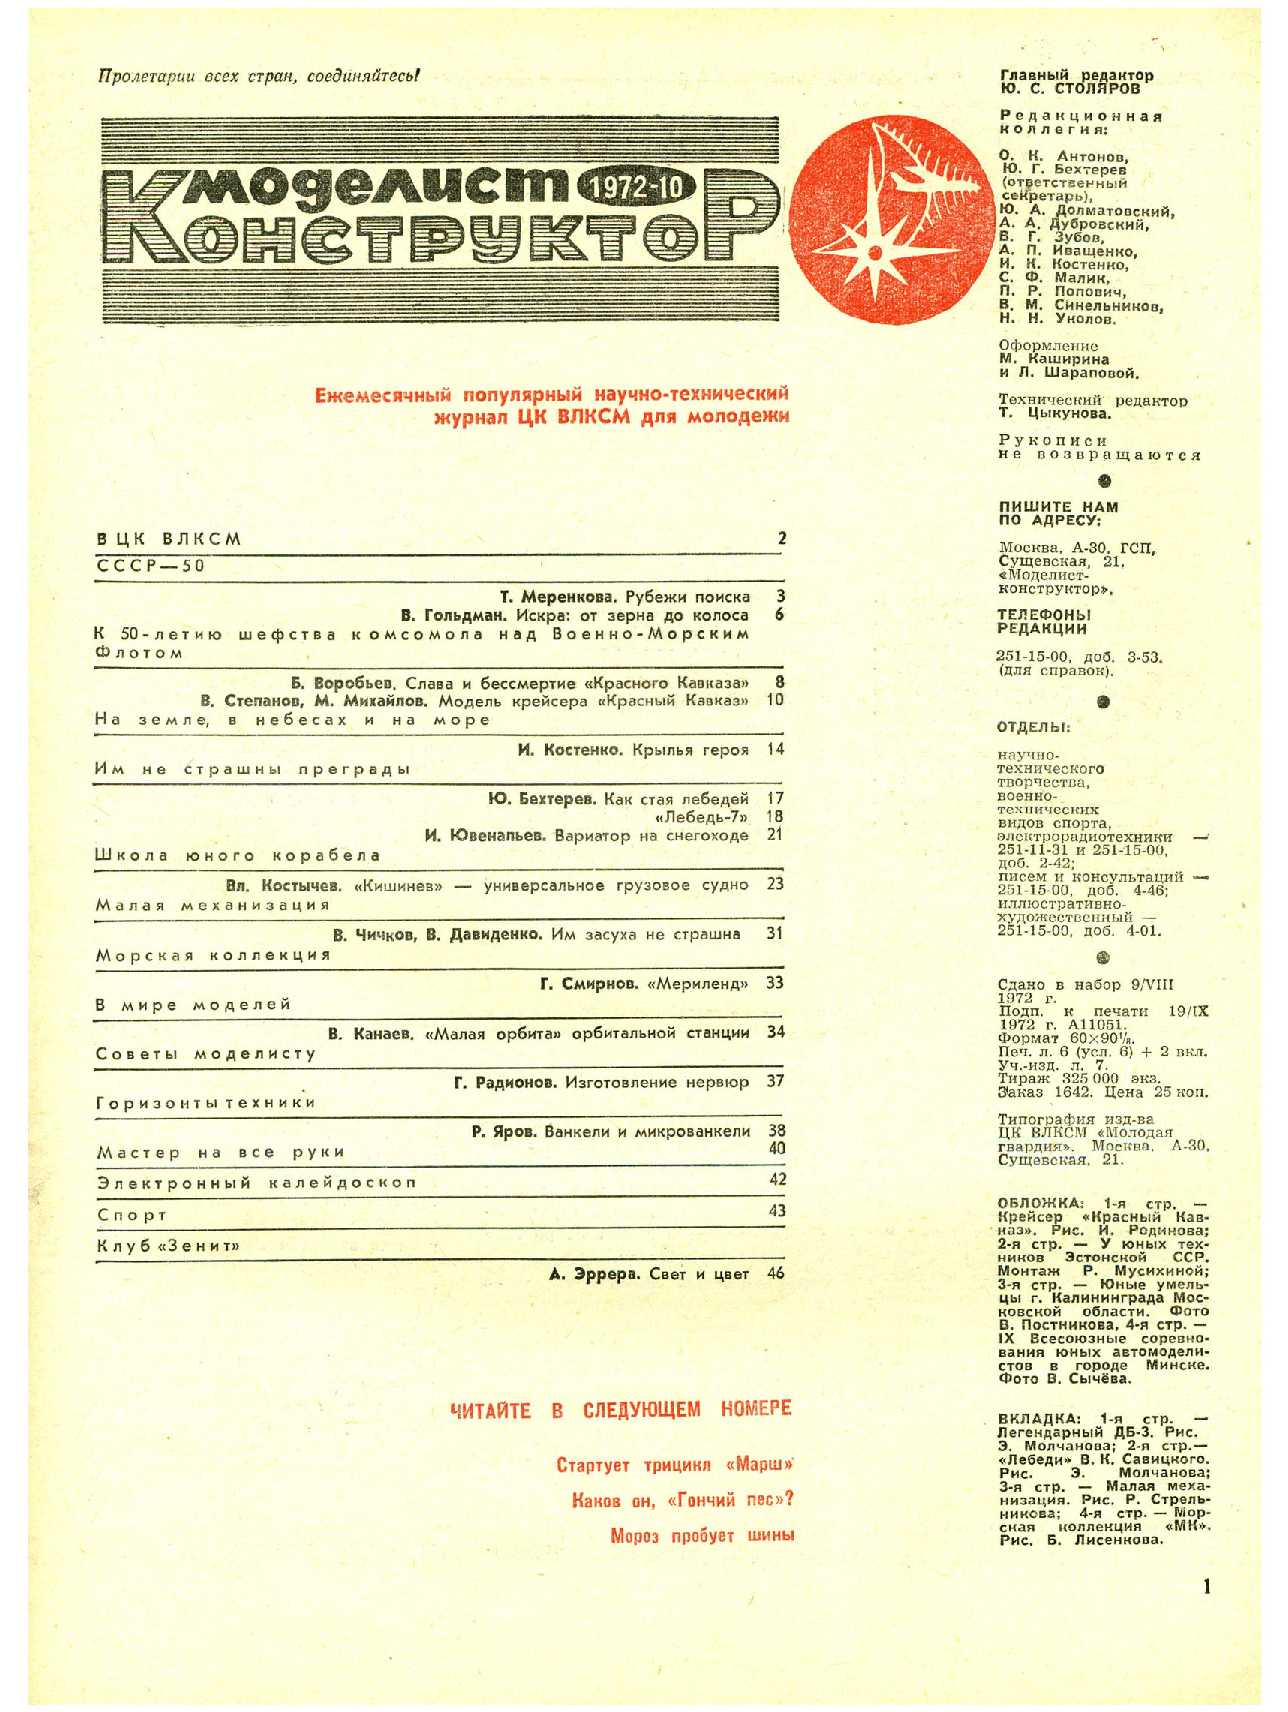 МК 10, 1972, 1 c.